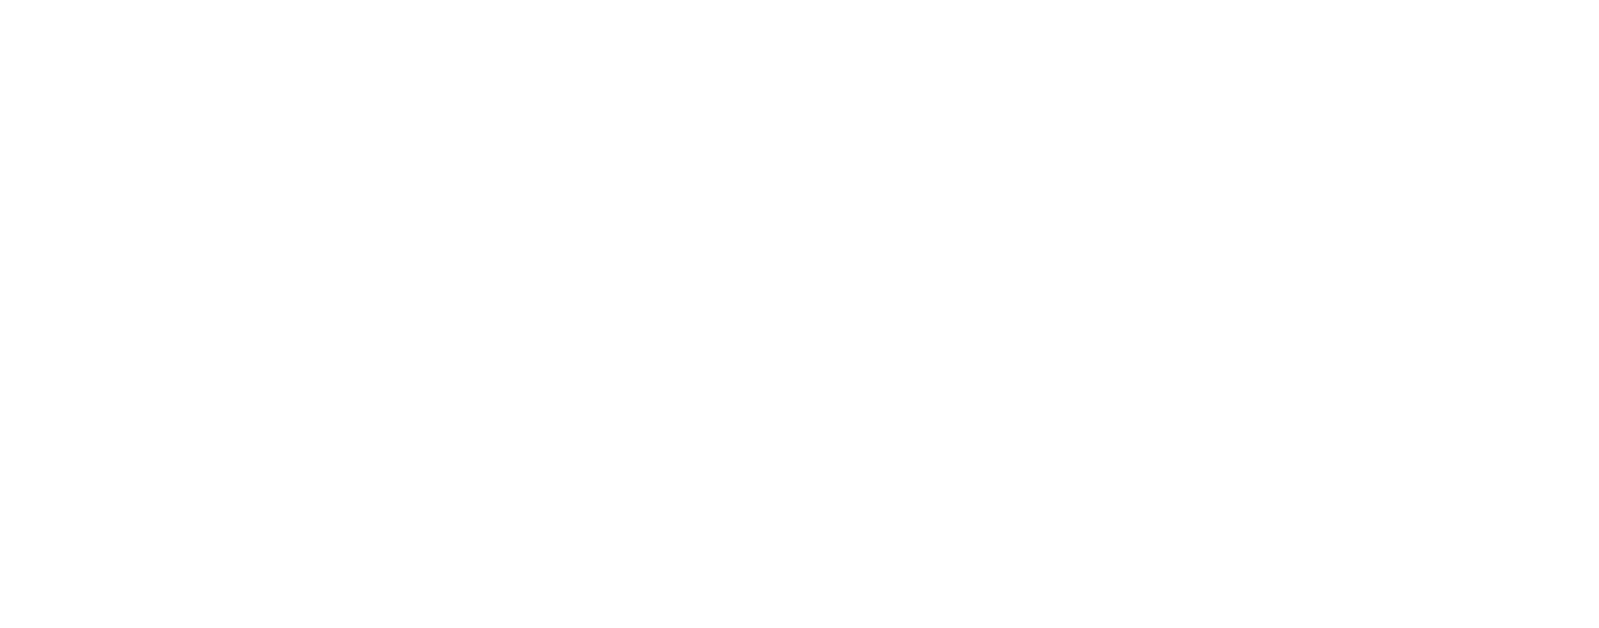 Simon Property Group logo grand pour les fonds sombres (PNG transparent)